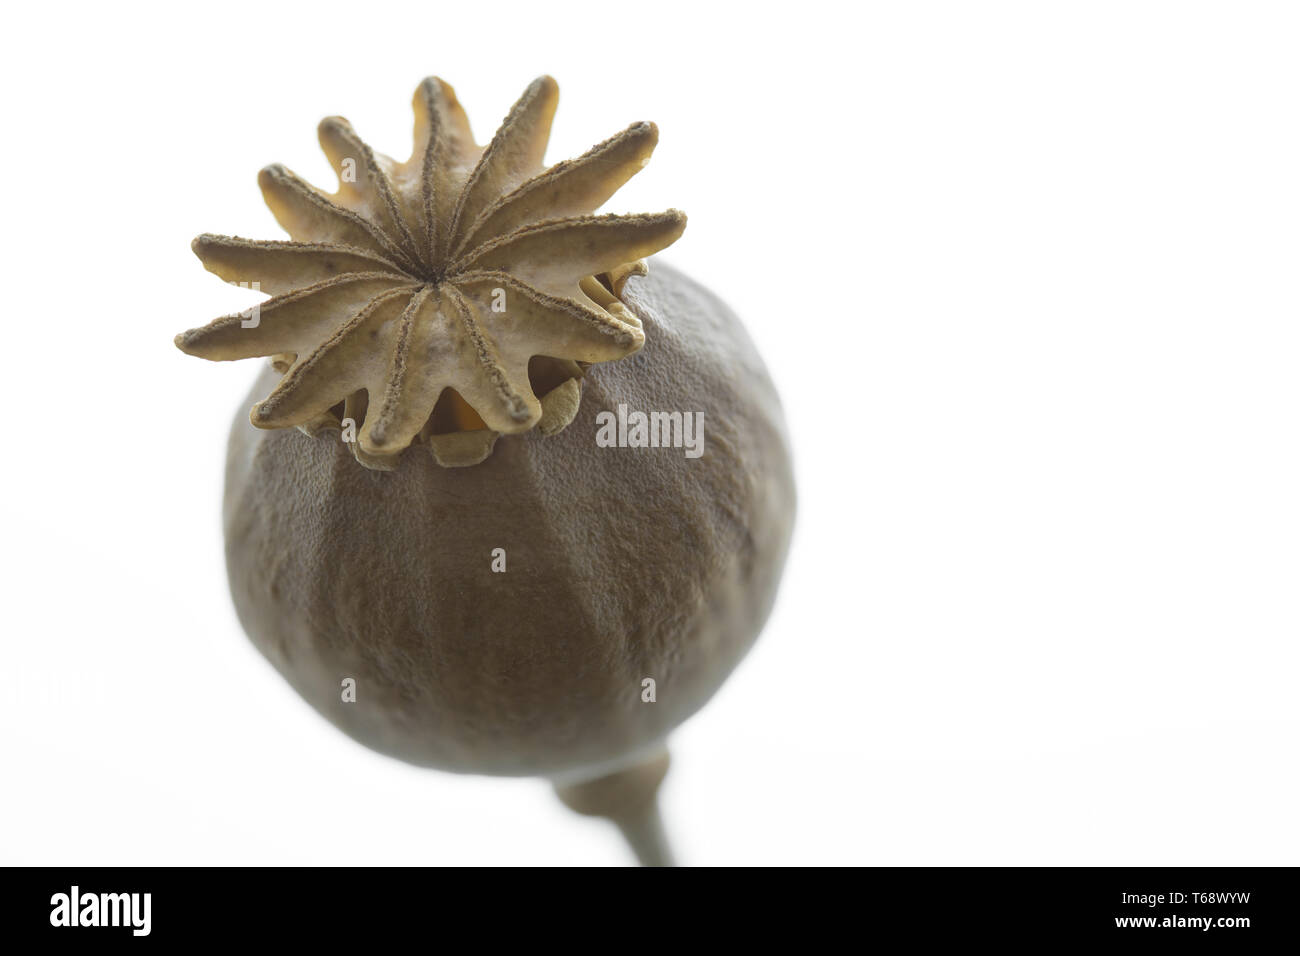 poppy seed capsule Stock Photo - Alamy